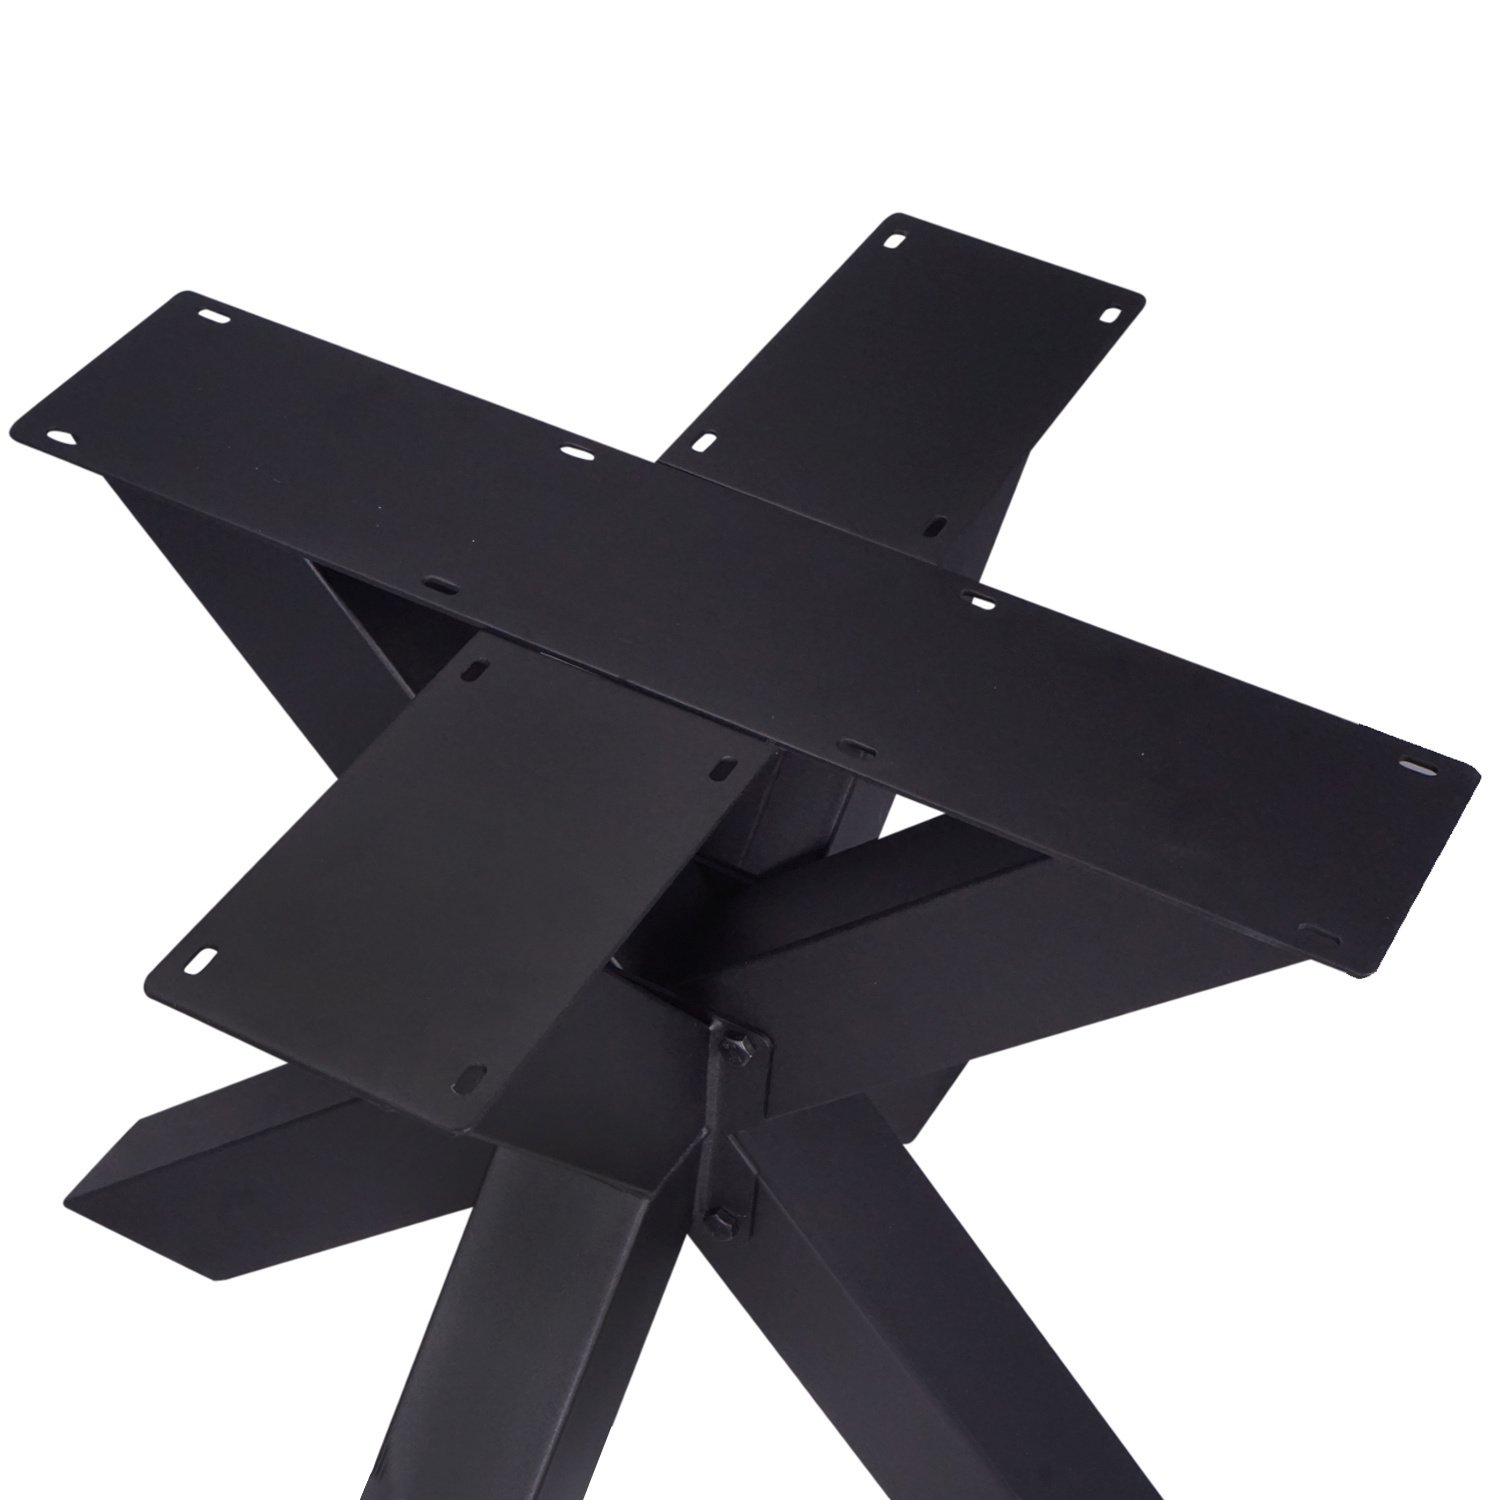  Stalen dubbele kruispoot - DRIE DELIG - 10x10 cm - 72 cm hoog - 90x90 cm - Dubbele X poot staal gepoedercoat (fijnstructuur) - zwart